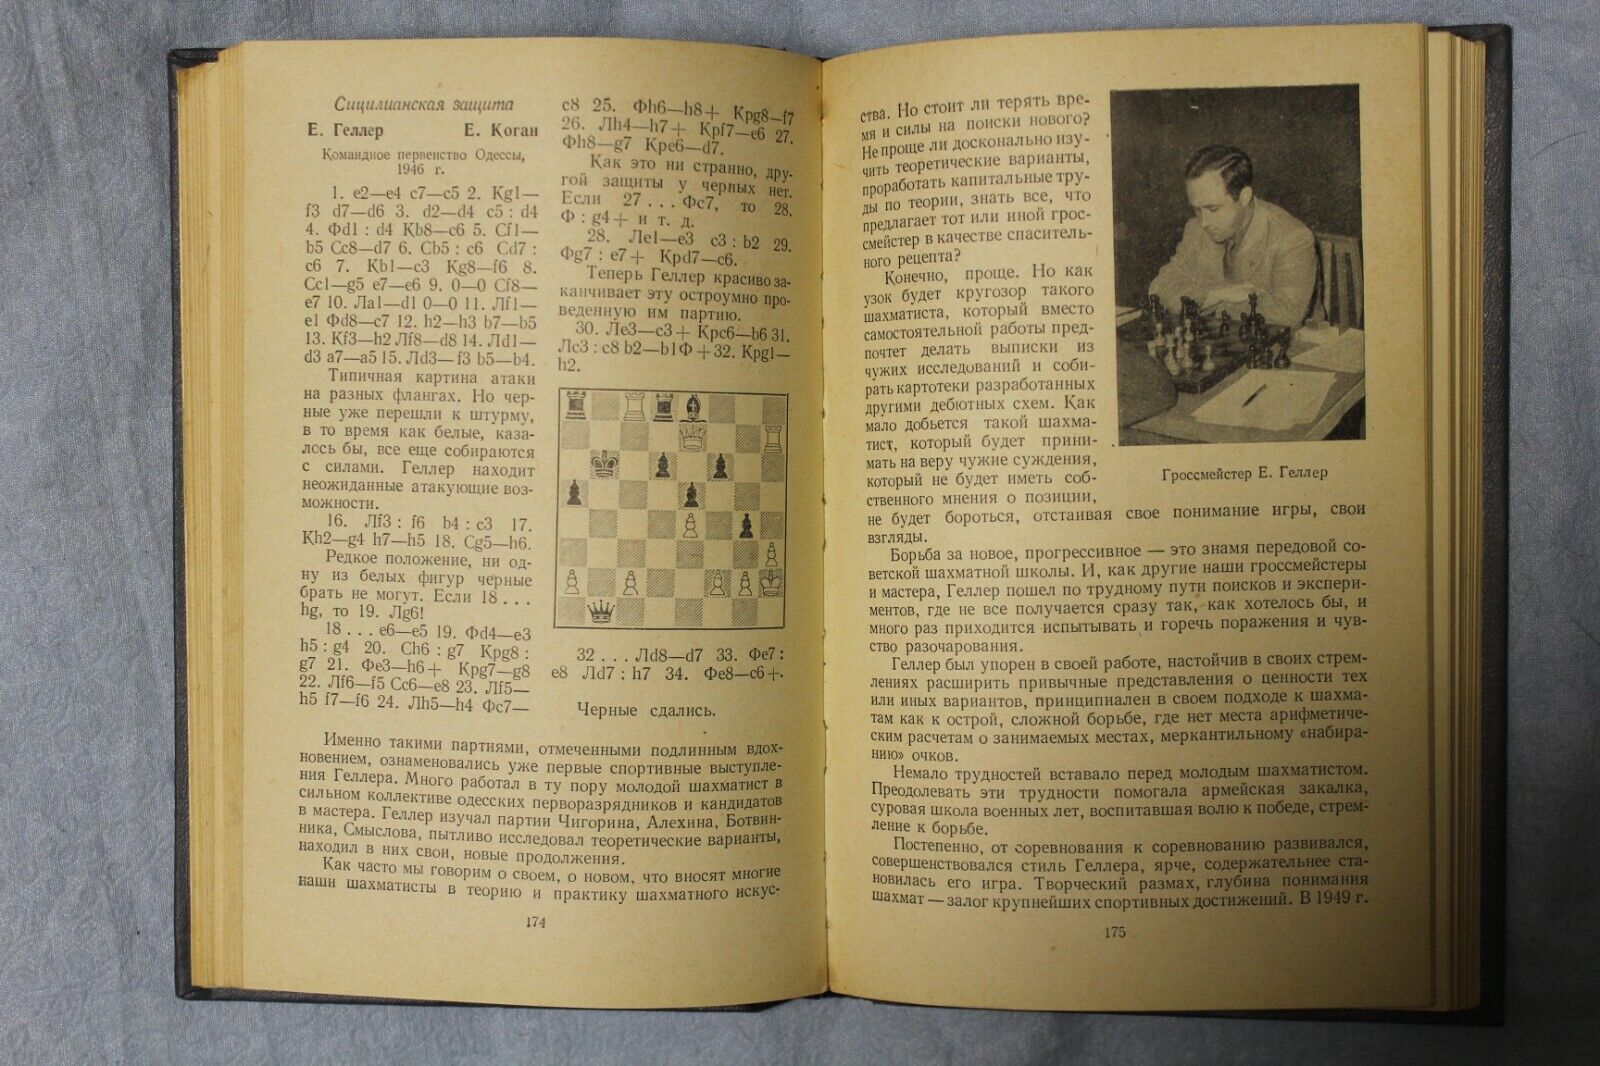 10971.Book: signed Roshal outstanding chess journalist, Soviet Chess School,1955 Kotov